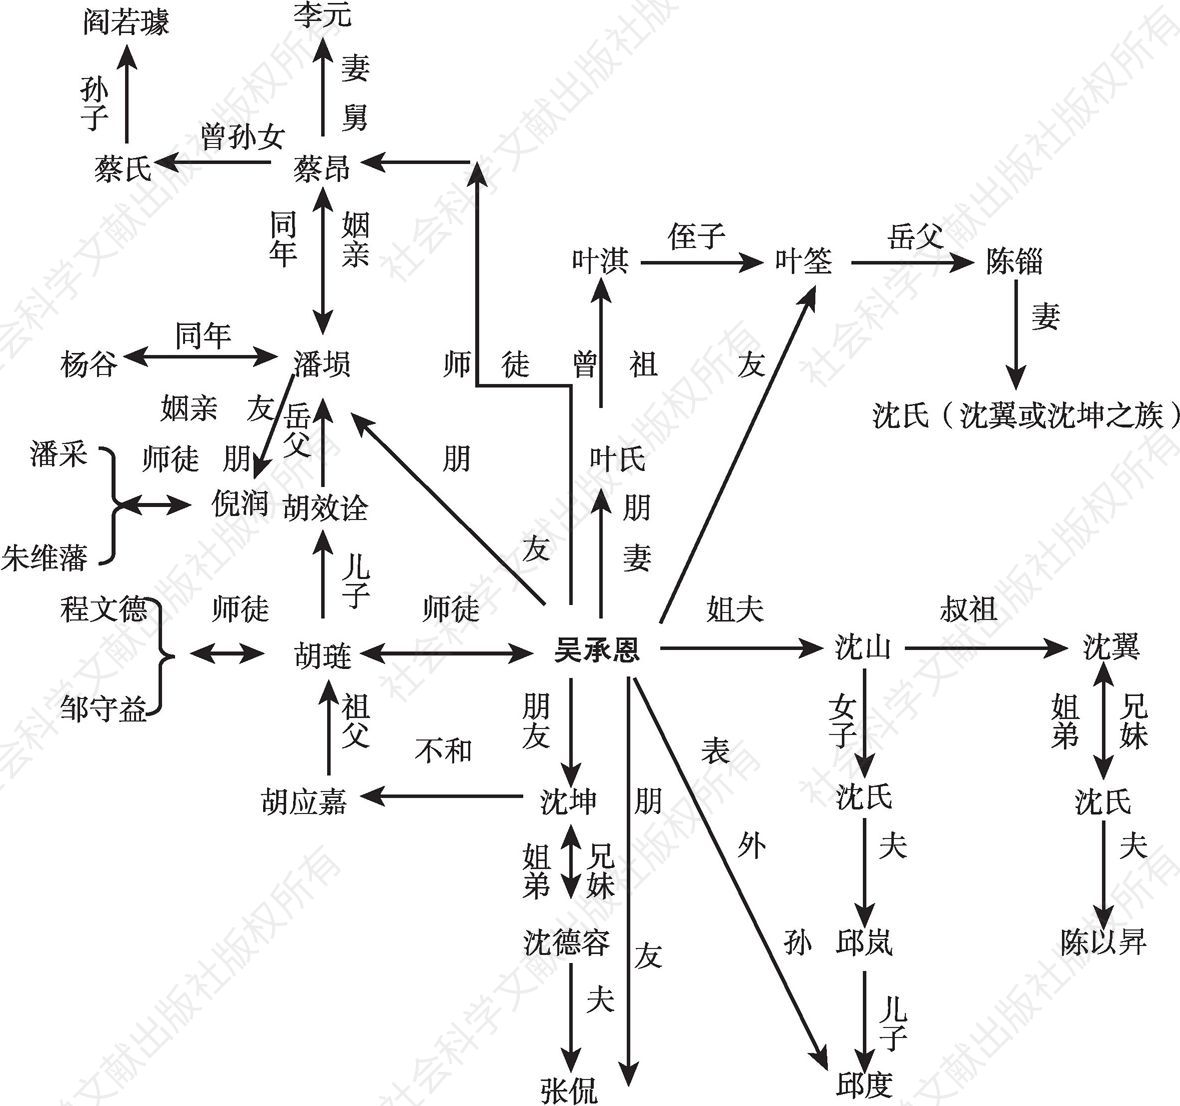 图2-3 明代山阳士绅人际关系网络架构图